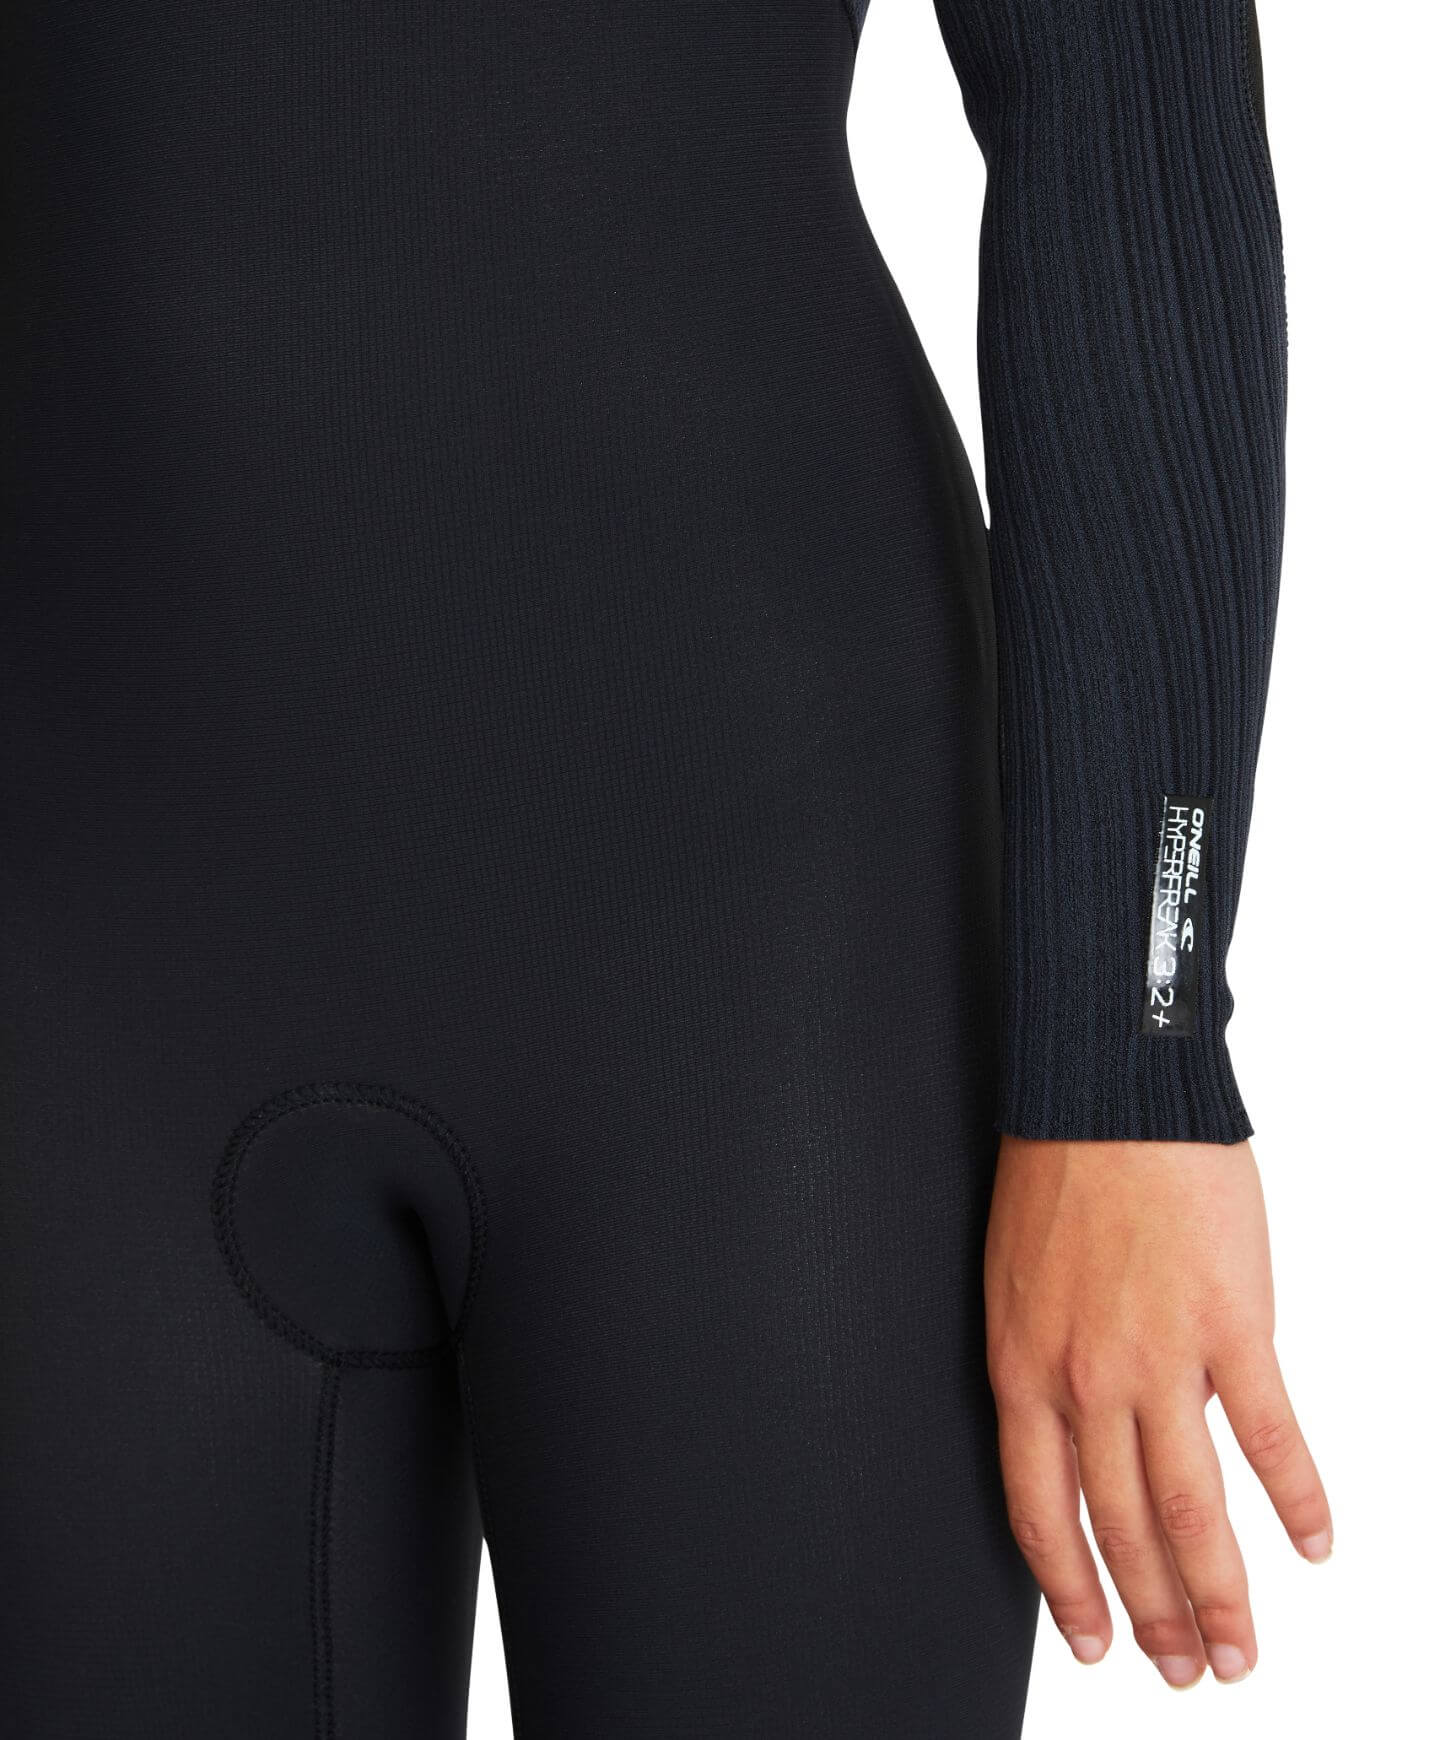 Girl's HyperFreak 3/2+ Steamer Chest Zip Wetsuit - Black